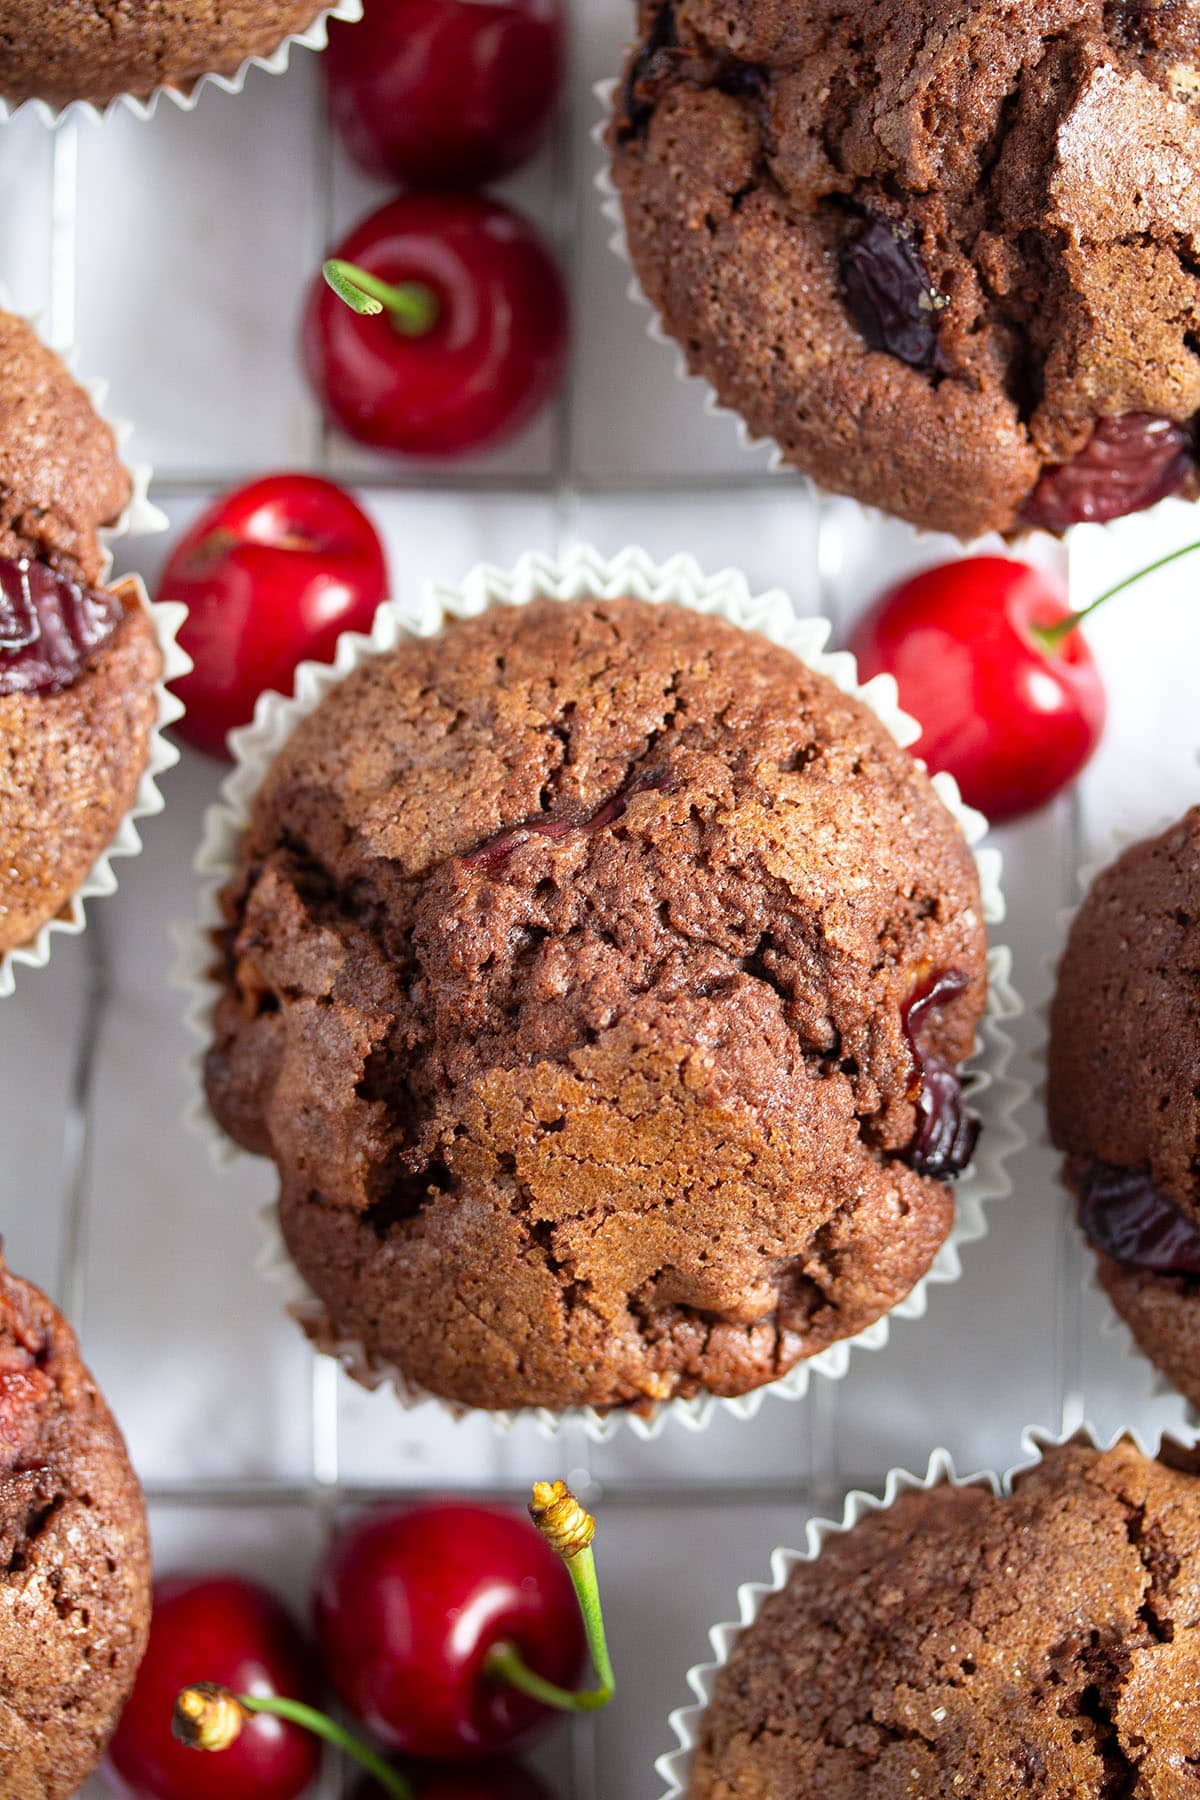 chocolate cherry muffins and some fresh cherries around them.